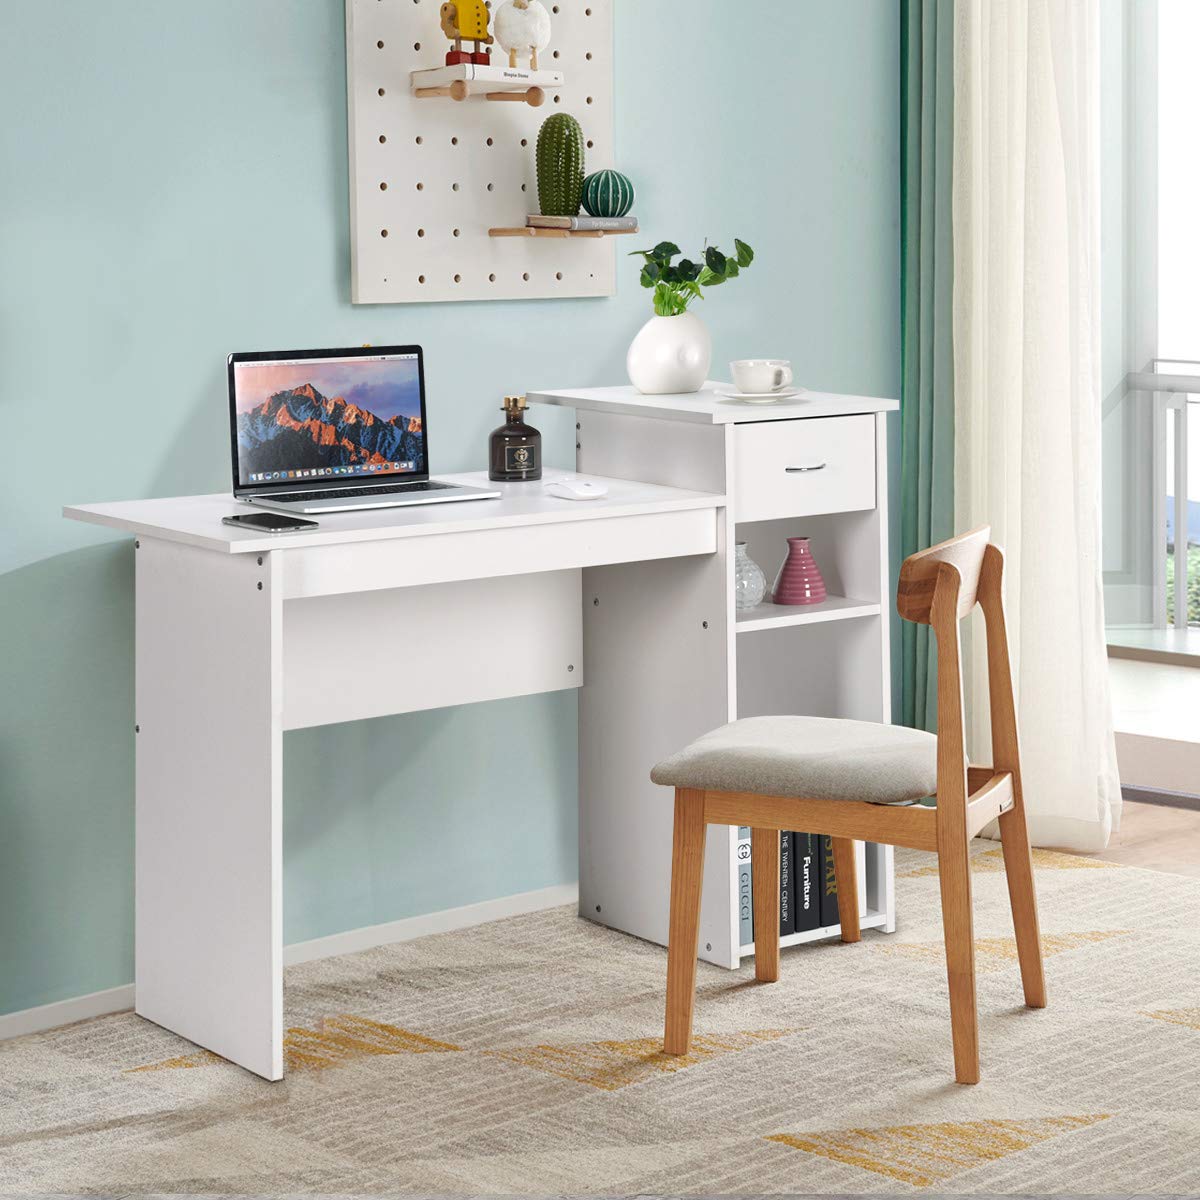 Giantex Home Office Computer Desk, Modern Study Writing Desk